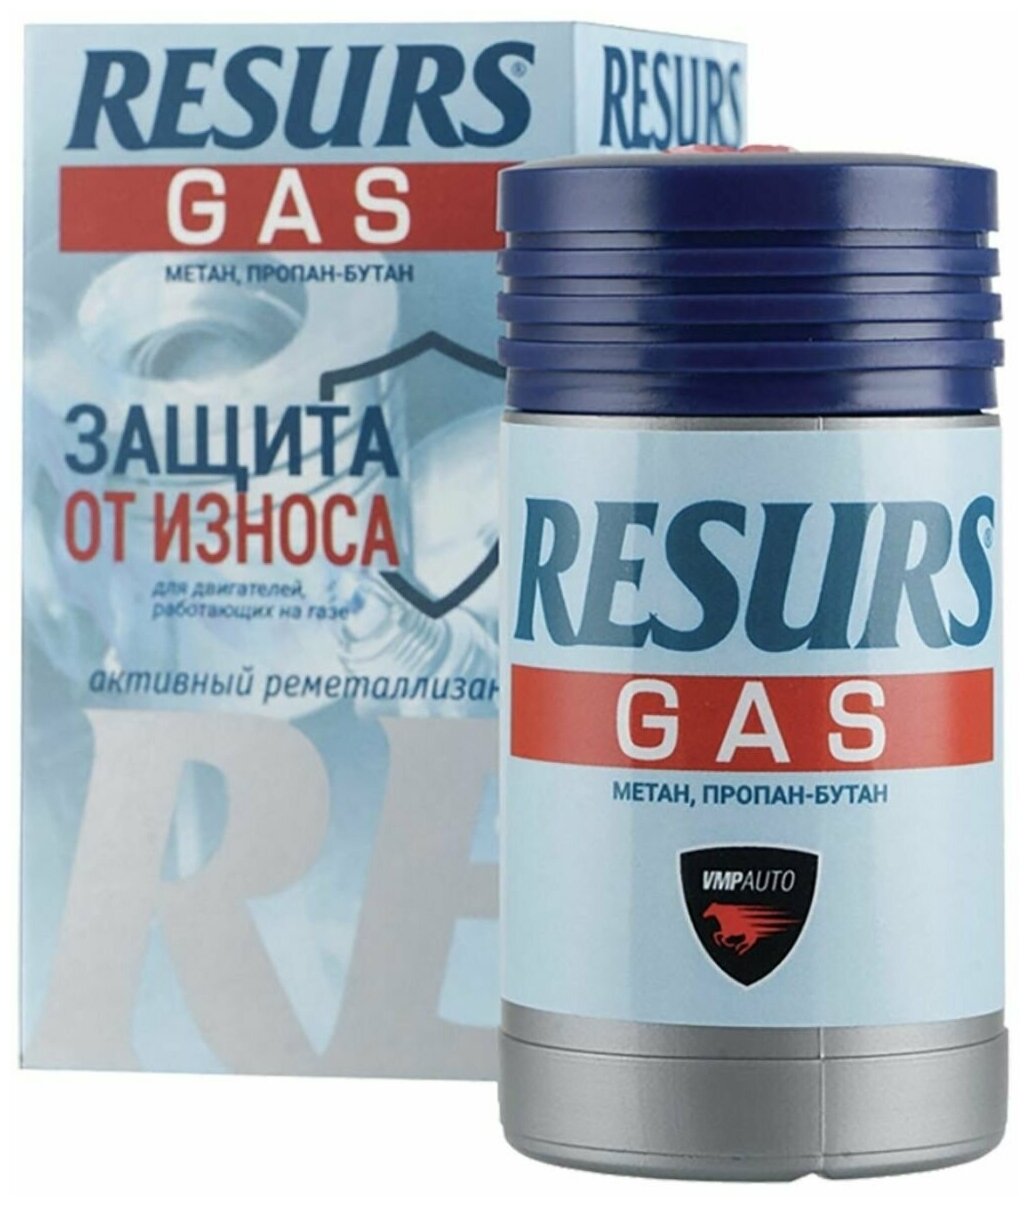 Присадка в масло реметаллизант Resurs Газ, 50 грамм, для двигателей на газе